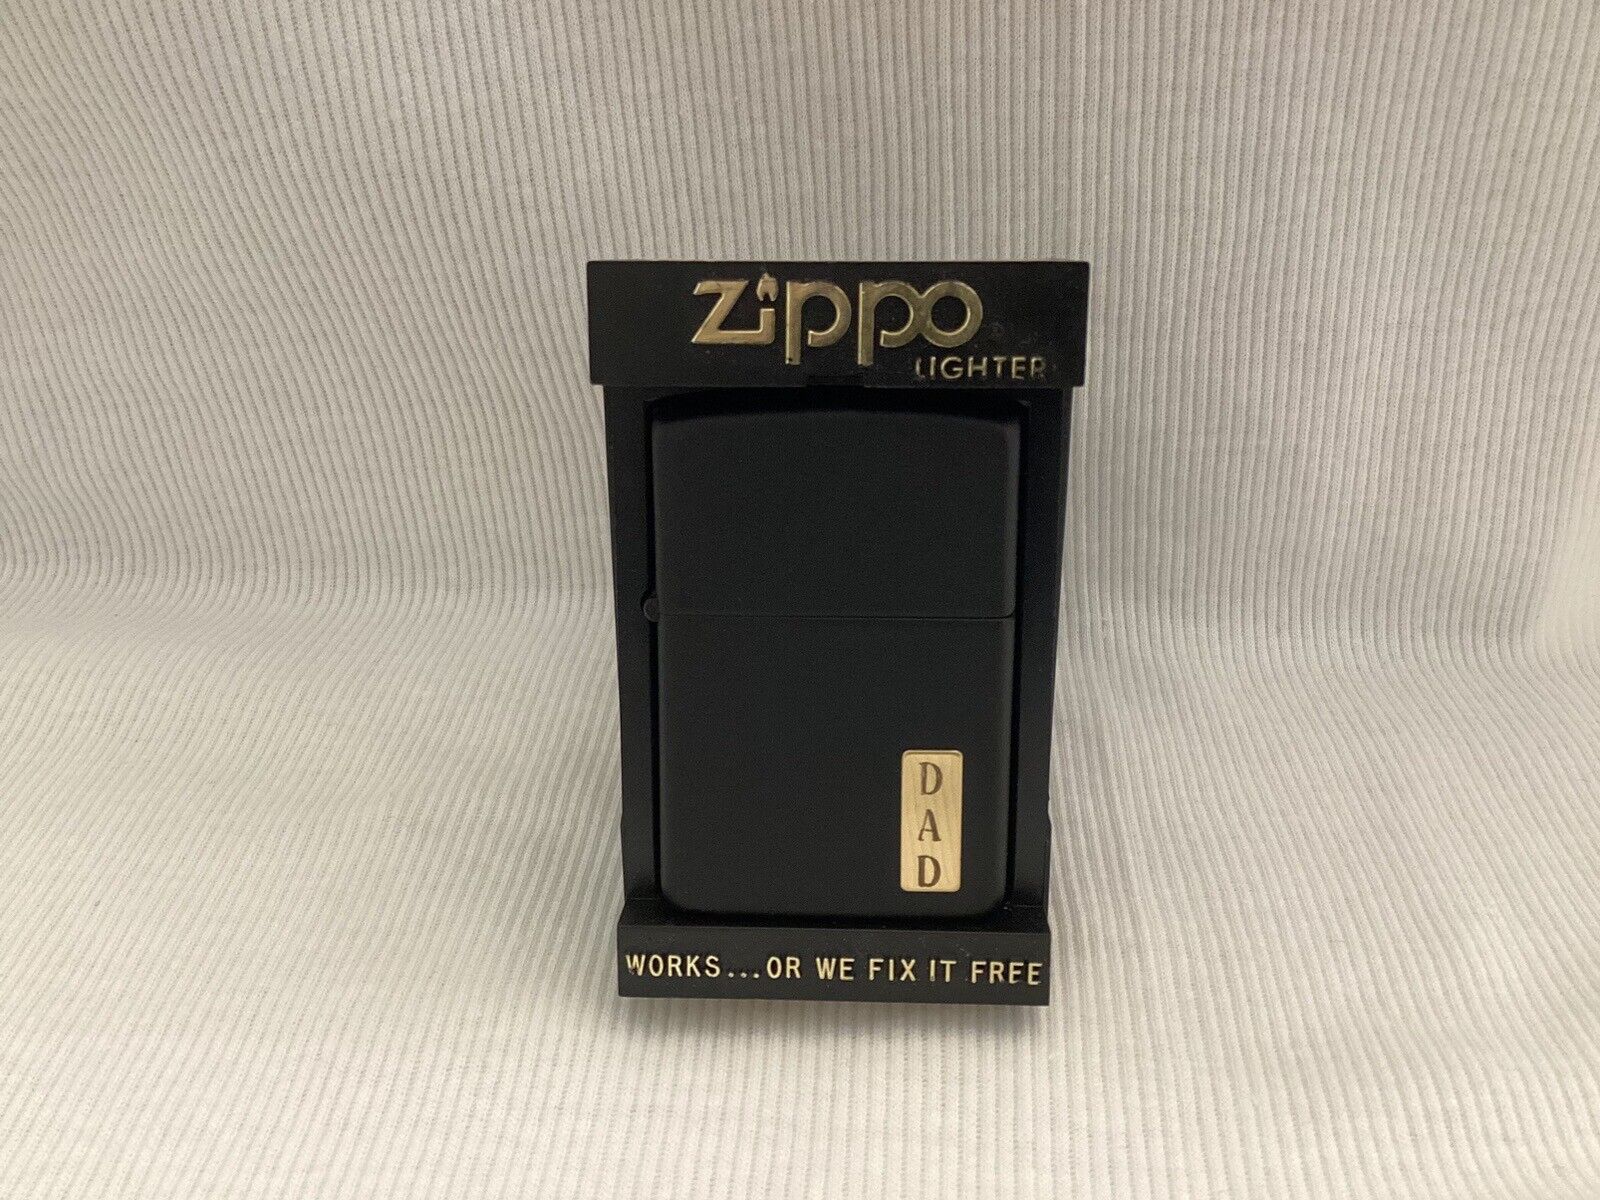 1988 Zippo Matte Black Lighter Engraved “DAD”